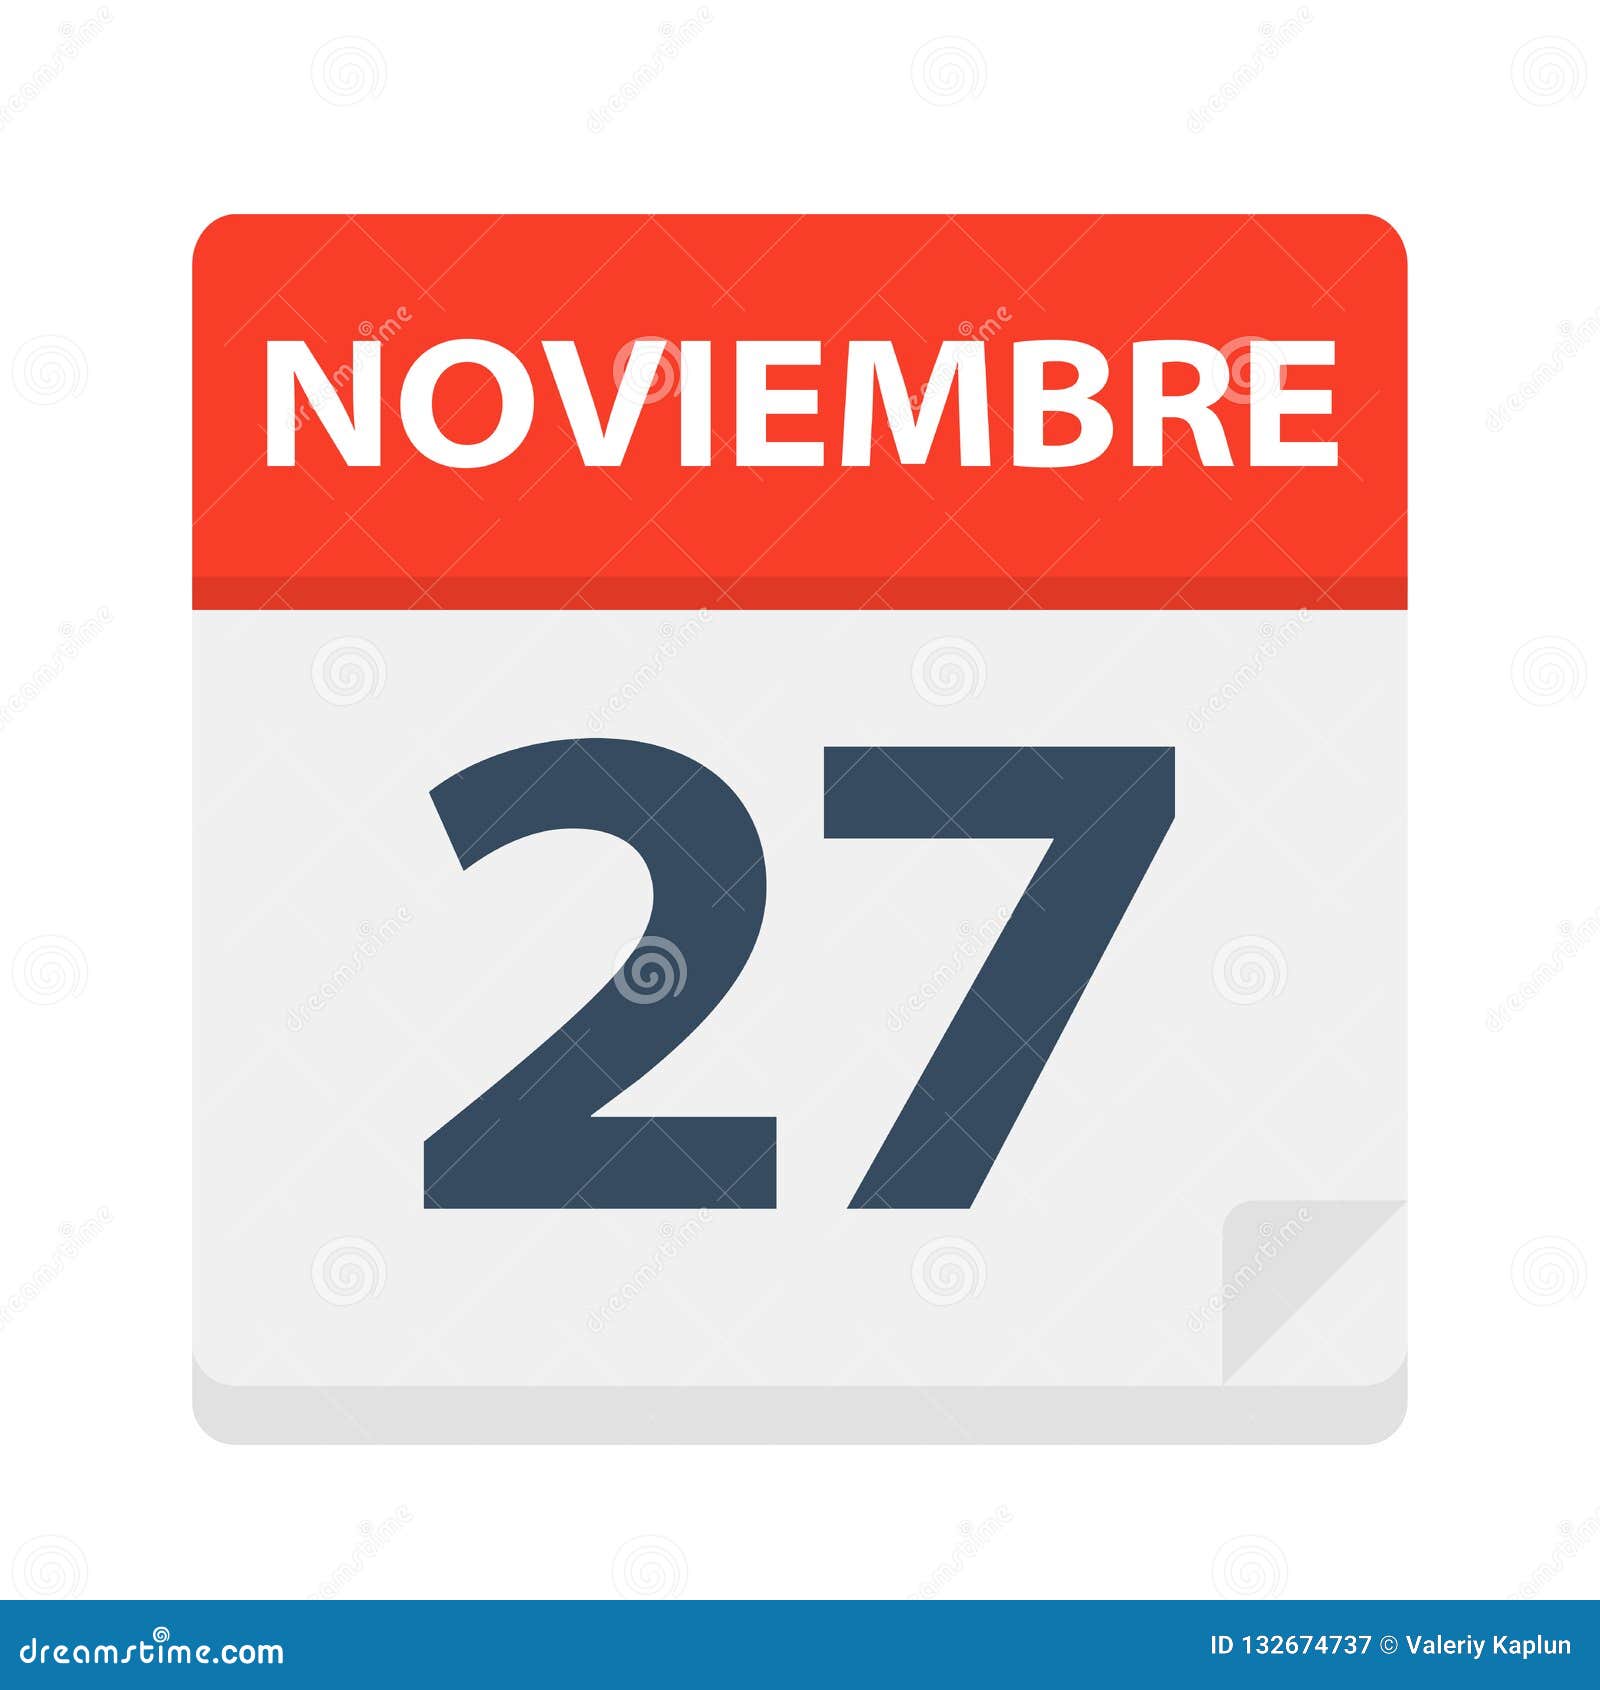 noviembre 27 - calendar icon - november 27.   of spanish calendar leaf